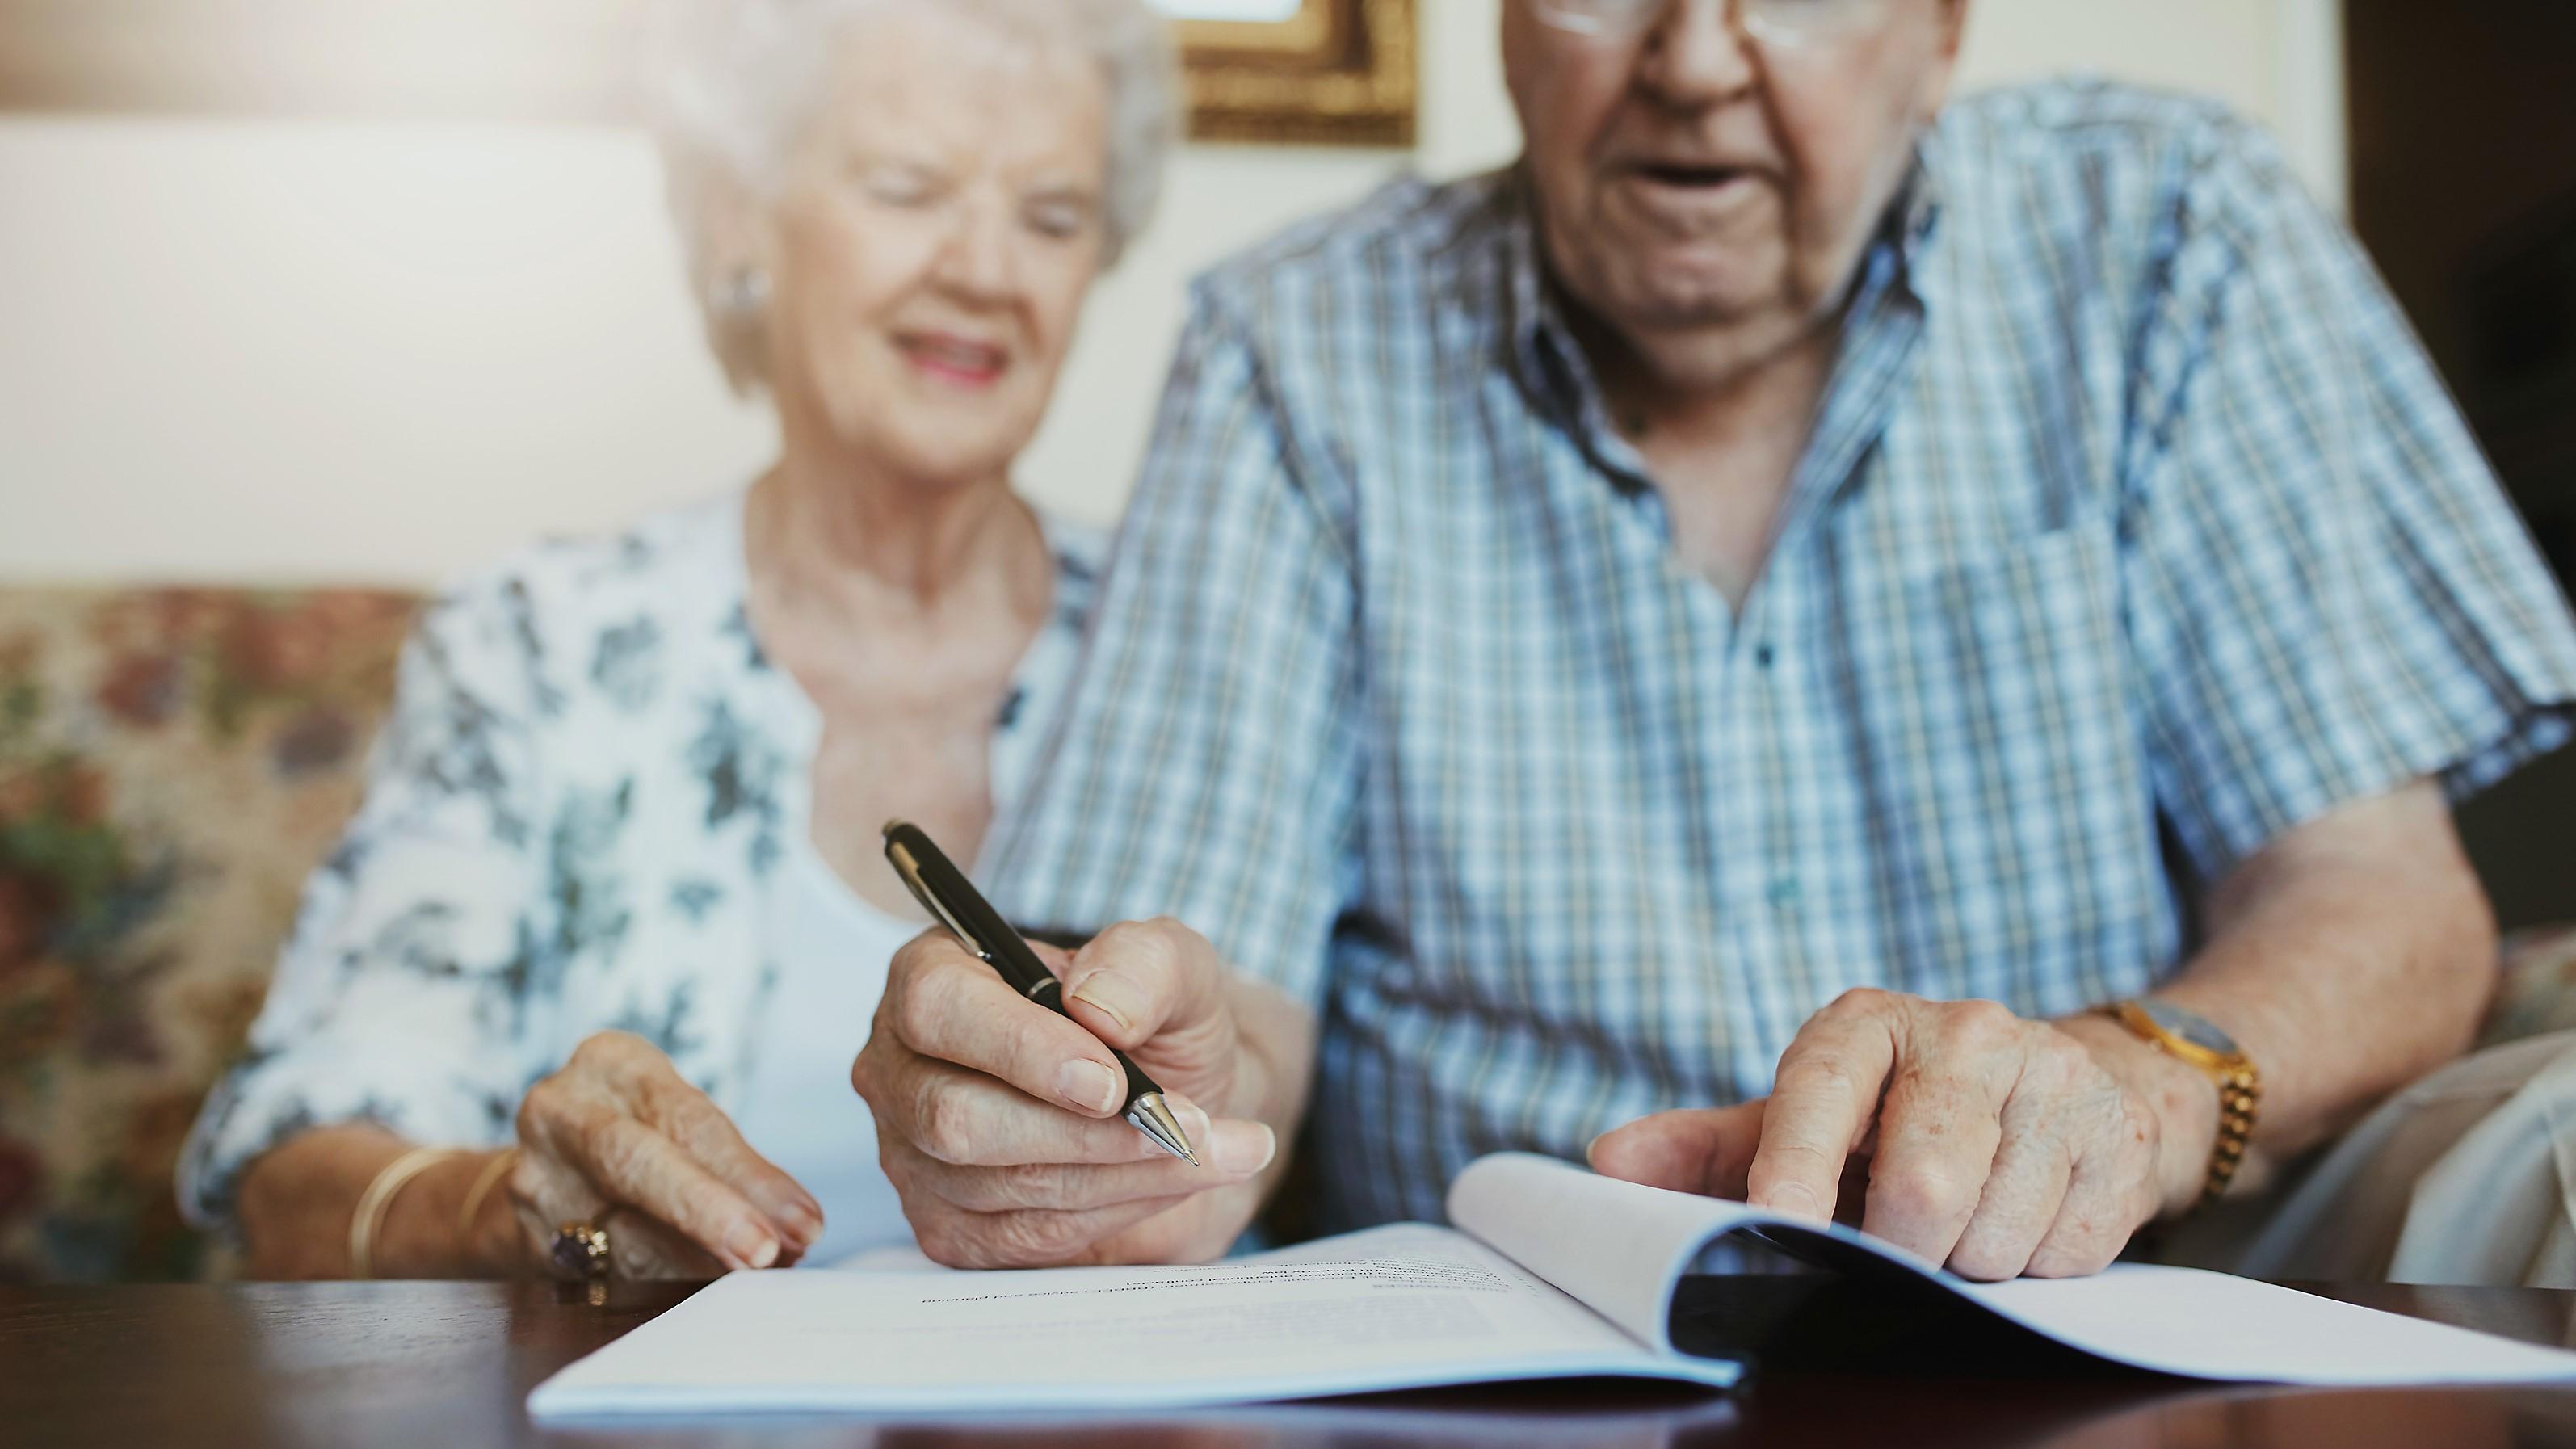 Allmänna arvsfonden ska fördela arvet efter personer som saknar arvingar och ett skrivet testamente till utvecklande projekt. Foto: Jacob Lund/Shutterstock